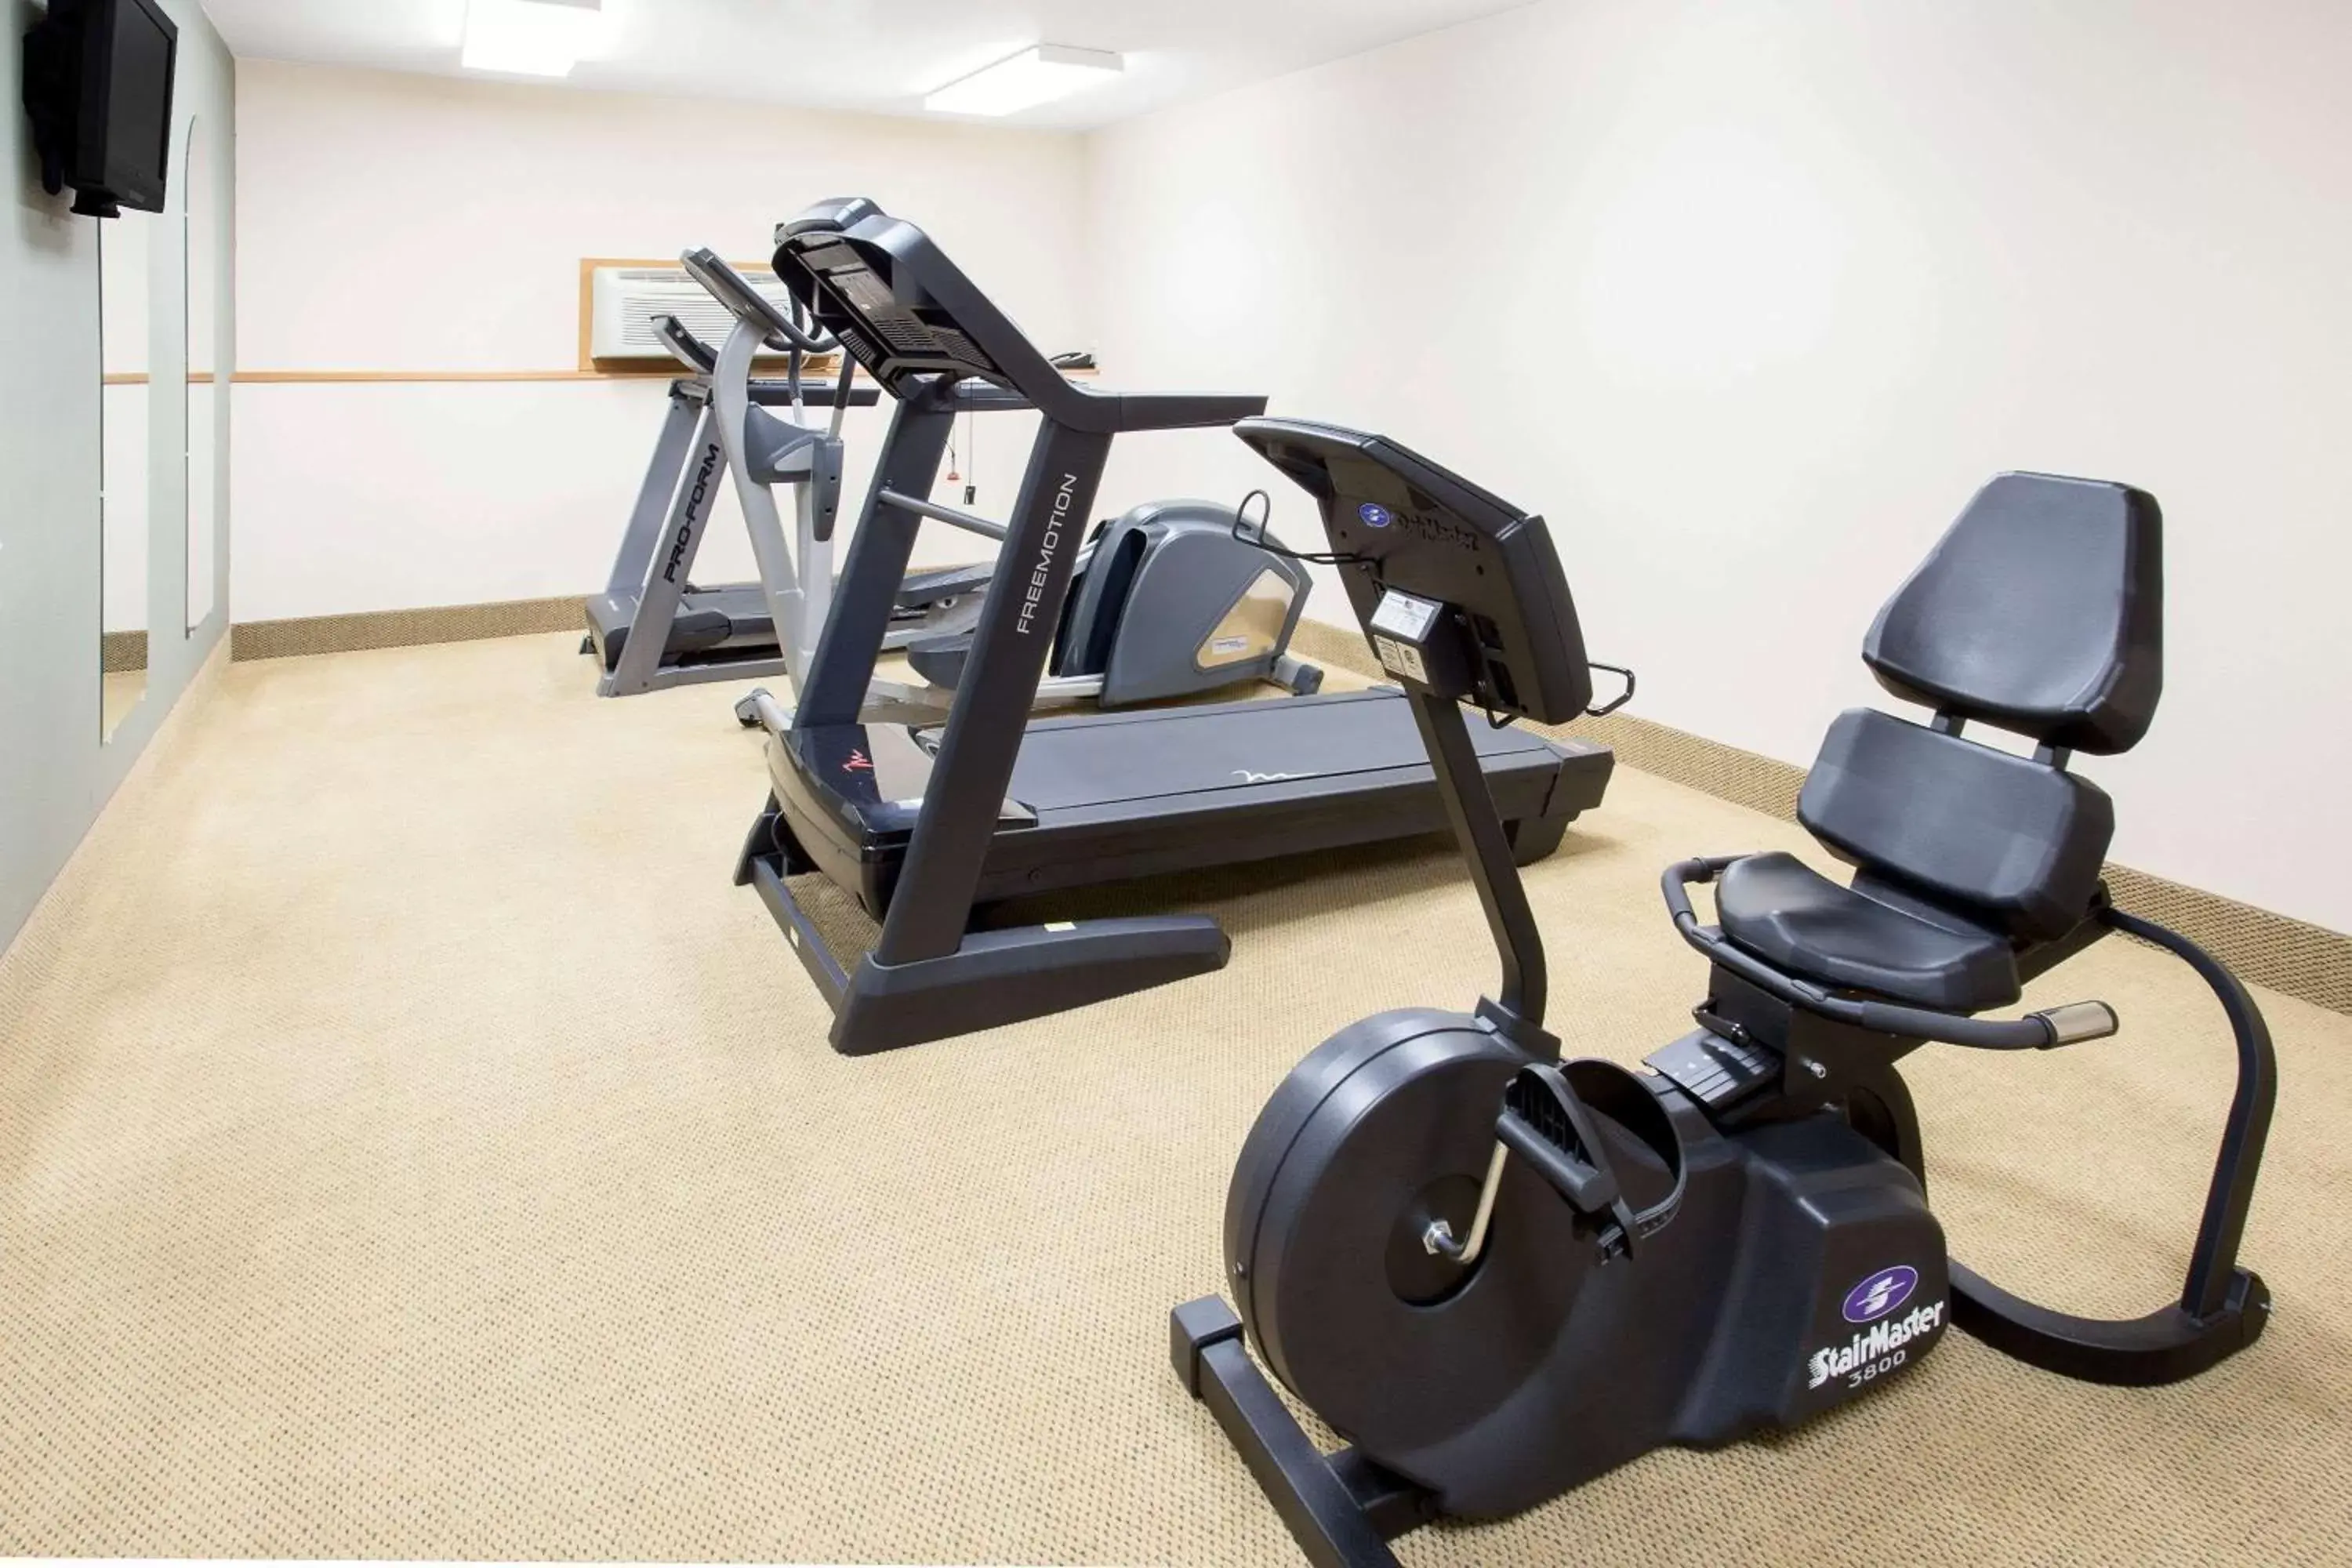 Fitness centre/facilities, Fitness Center/Facilities in Darlington Inn